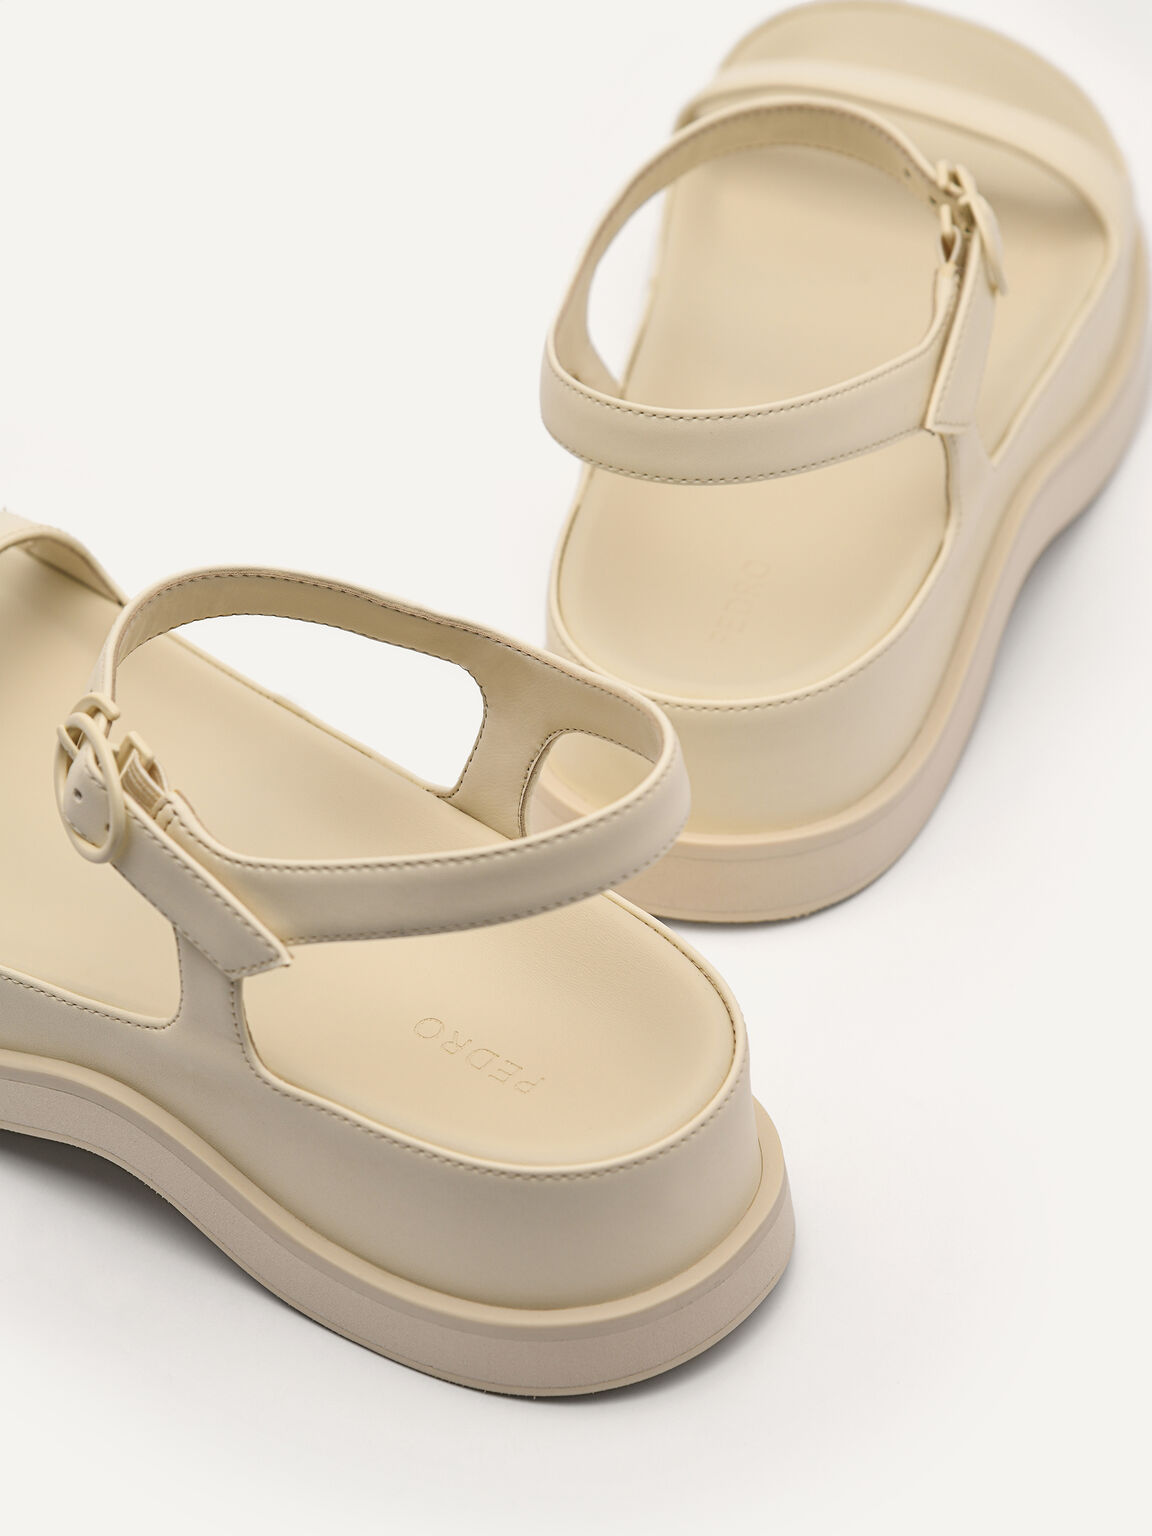 Crepe Flatform Sandals, Beige